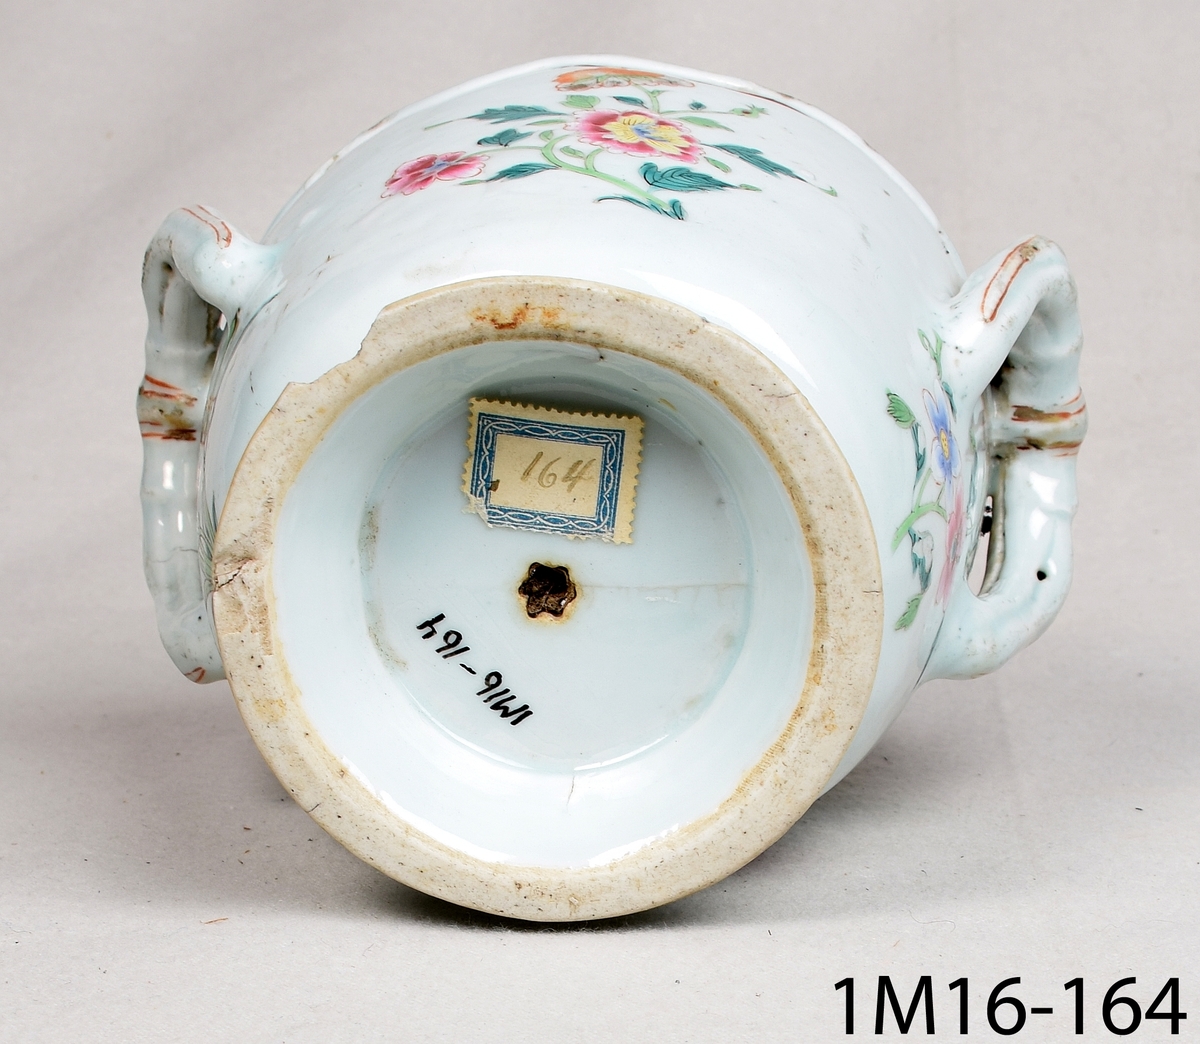 Rund kruka av keramik med ljusblå glasyr och handmålad blomdekor i många färger och guld. Krukan har två hänklar i överkant och en vågformad kant.